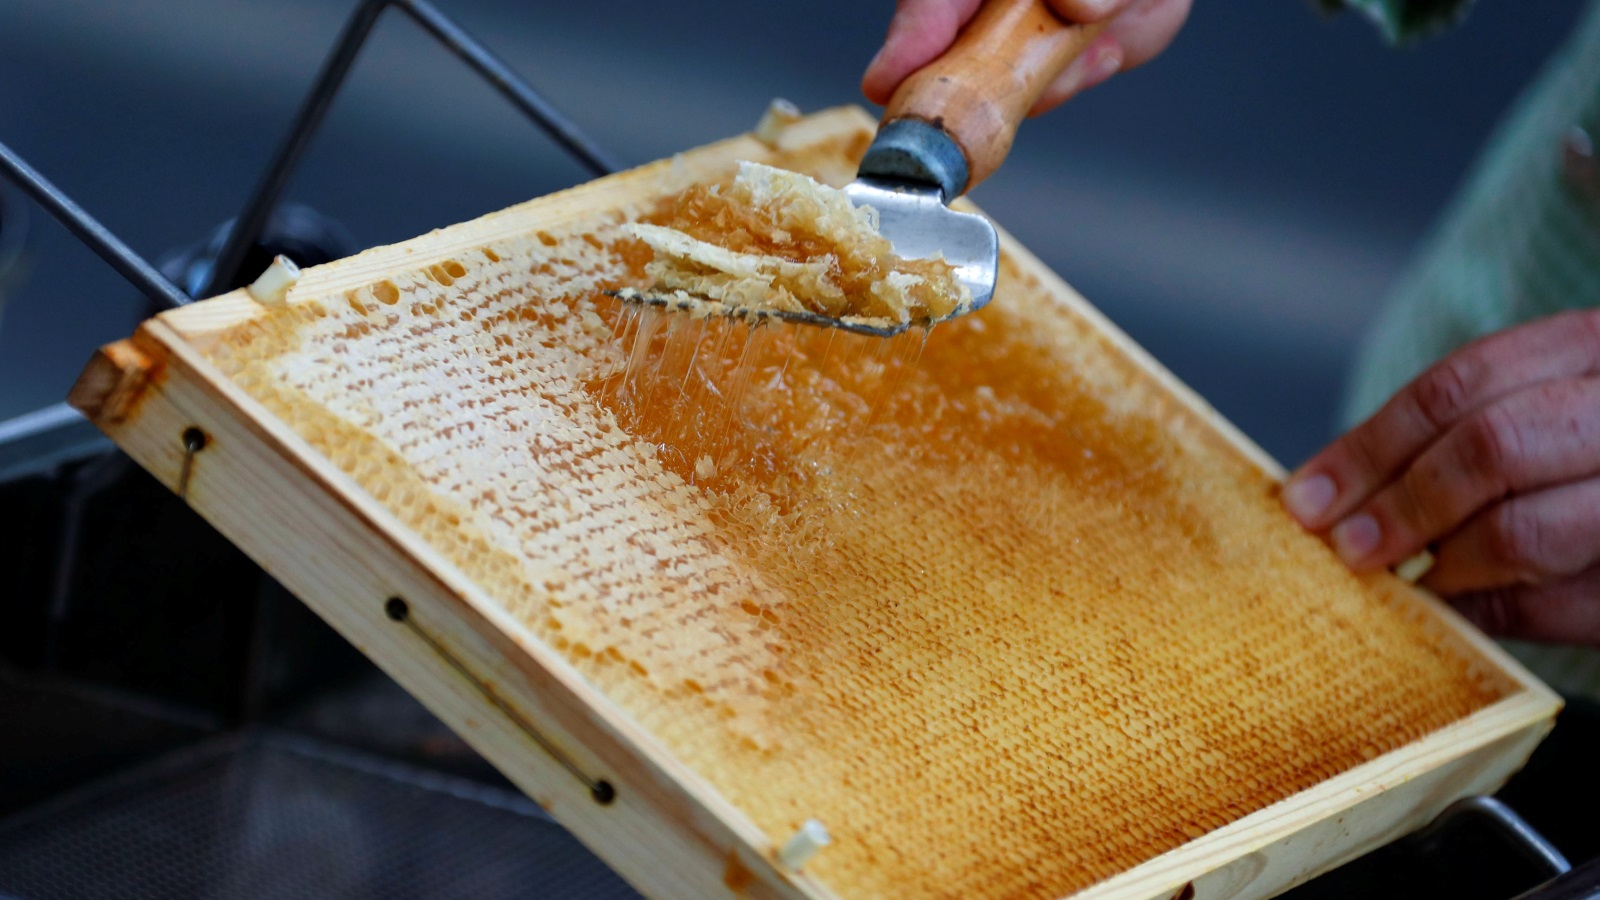 ‪إلى جانب تلقيح المحاصيل تلعب منتجات النحل، كالعسل والشمع وخدمات التلقيح، دورا مهما لمربي النحل وعائلاتهم‬ (رويترز)